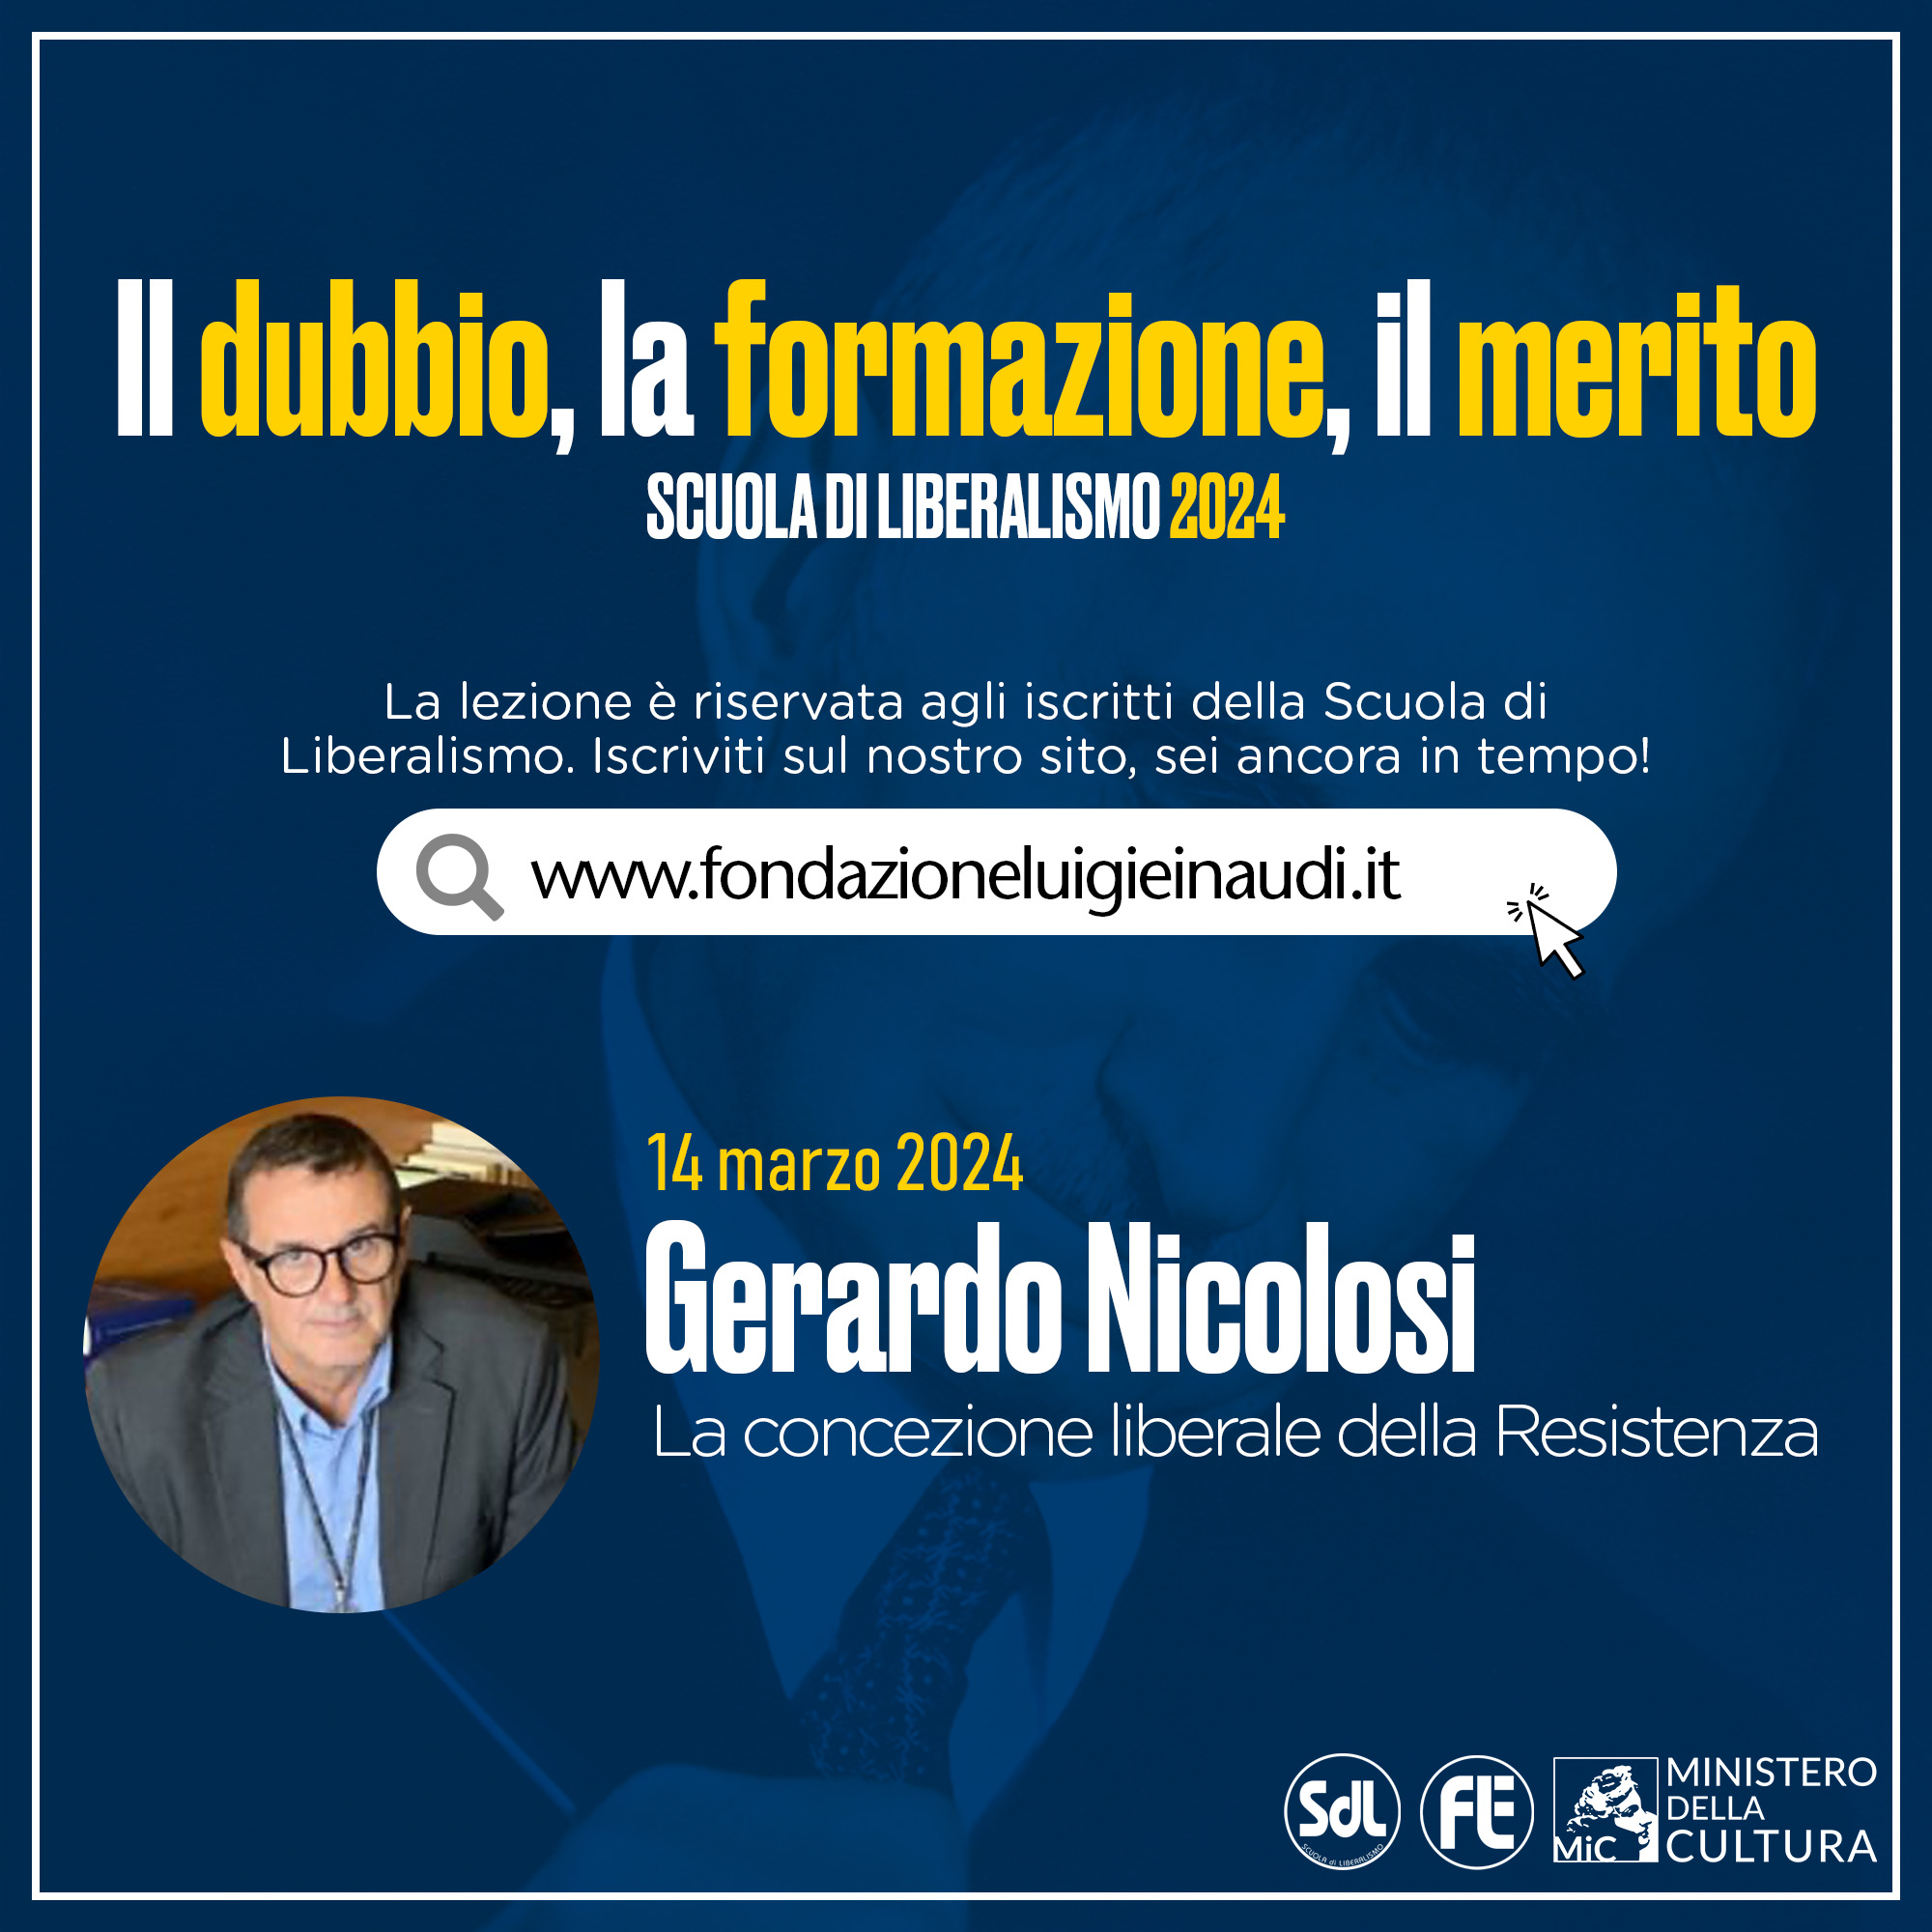 Scuola di Liberalismo 2024 – Gerardo Nicolosi, La concezione liberale della Resistenza